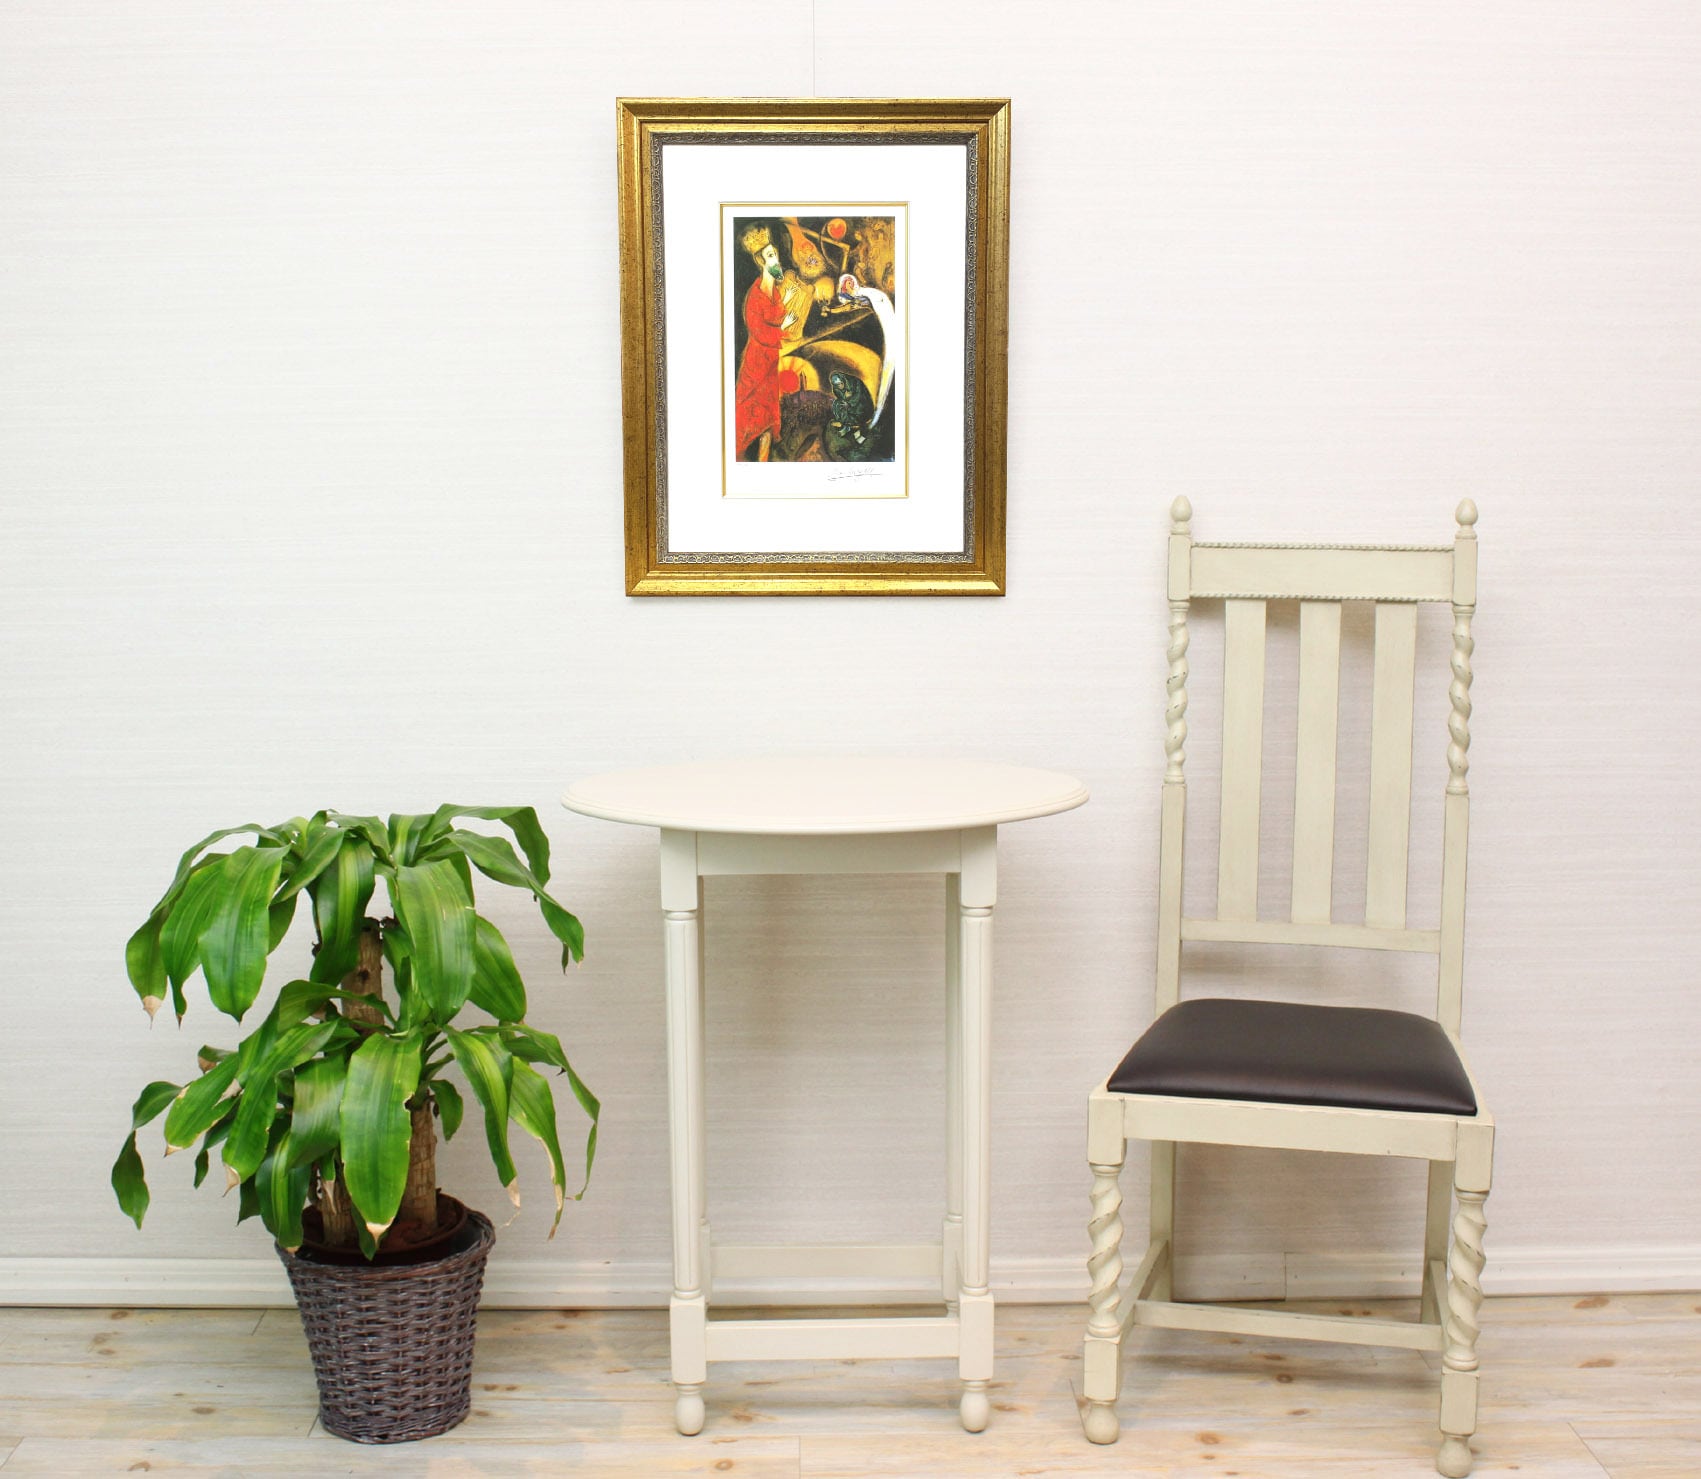 マルク・シャガール絵画「ダビデ王と竪琴」作品証明書・展示用フック・限定375部エディション付複製画ジークレ